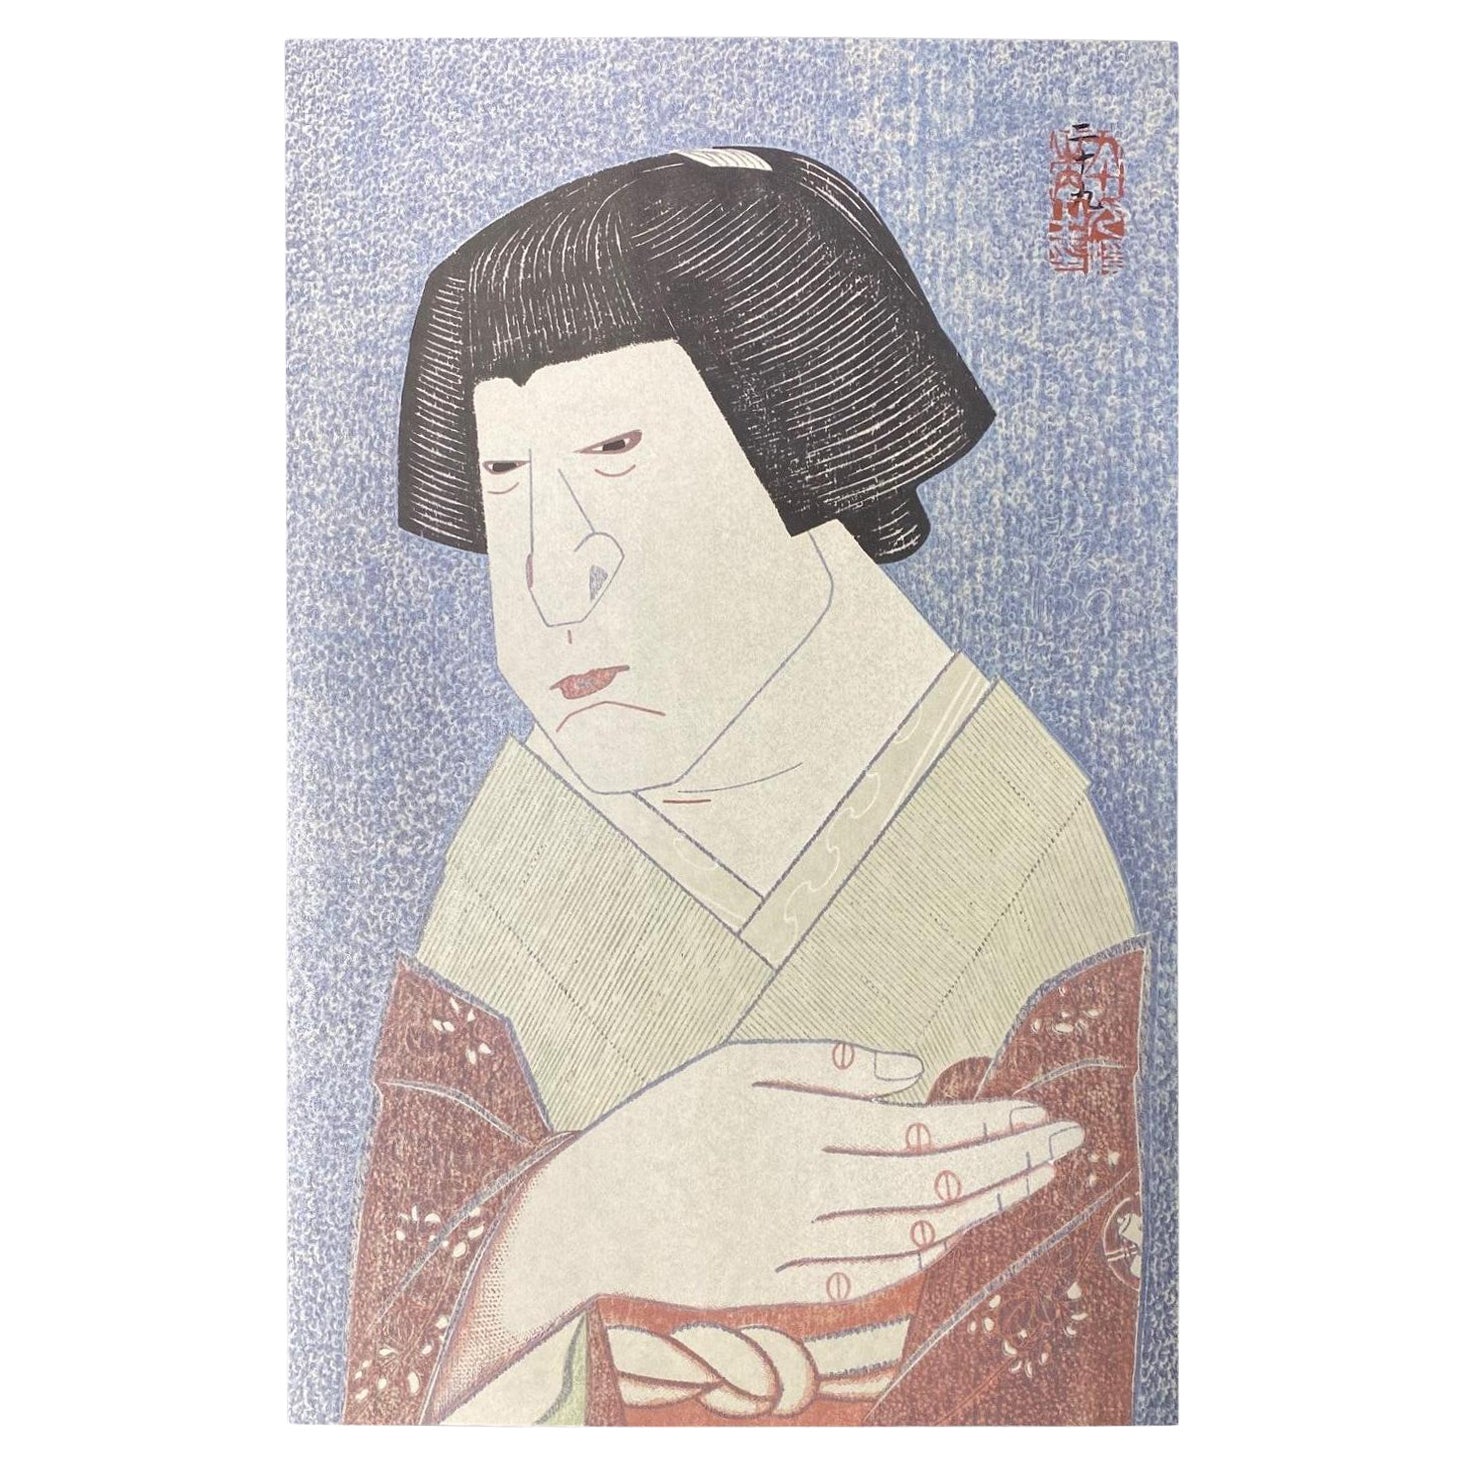 Tsuruya Kokei Signierter japanischer Holzschnitt Nakamura Shikan in limitierter Auflage 